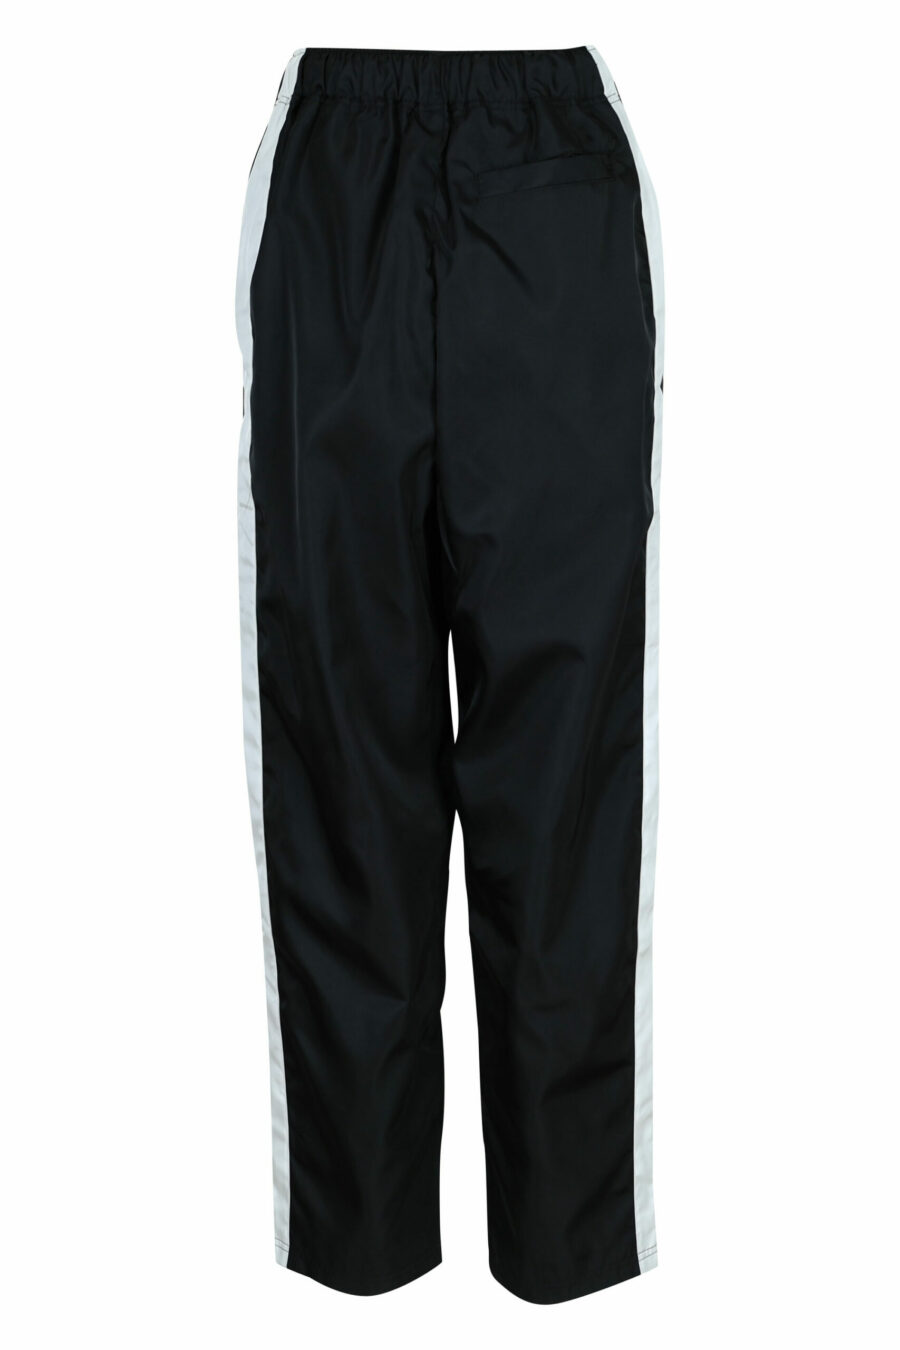 Pantalón de chándal negro con minilogo "kenzo" - 3612230584853 1 scaled